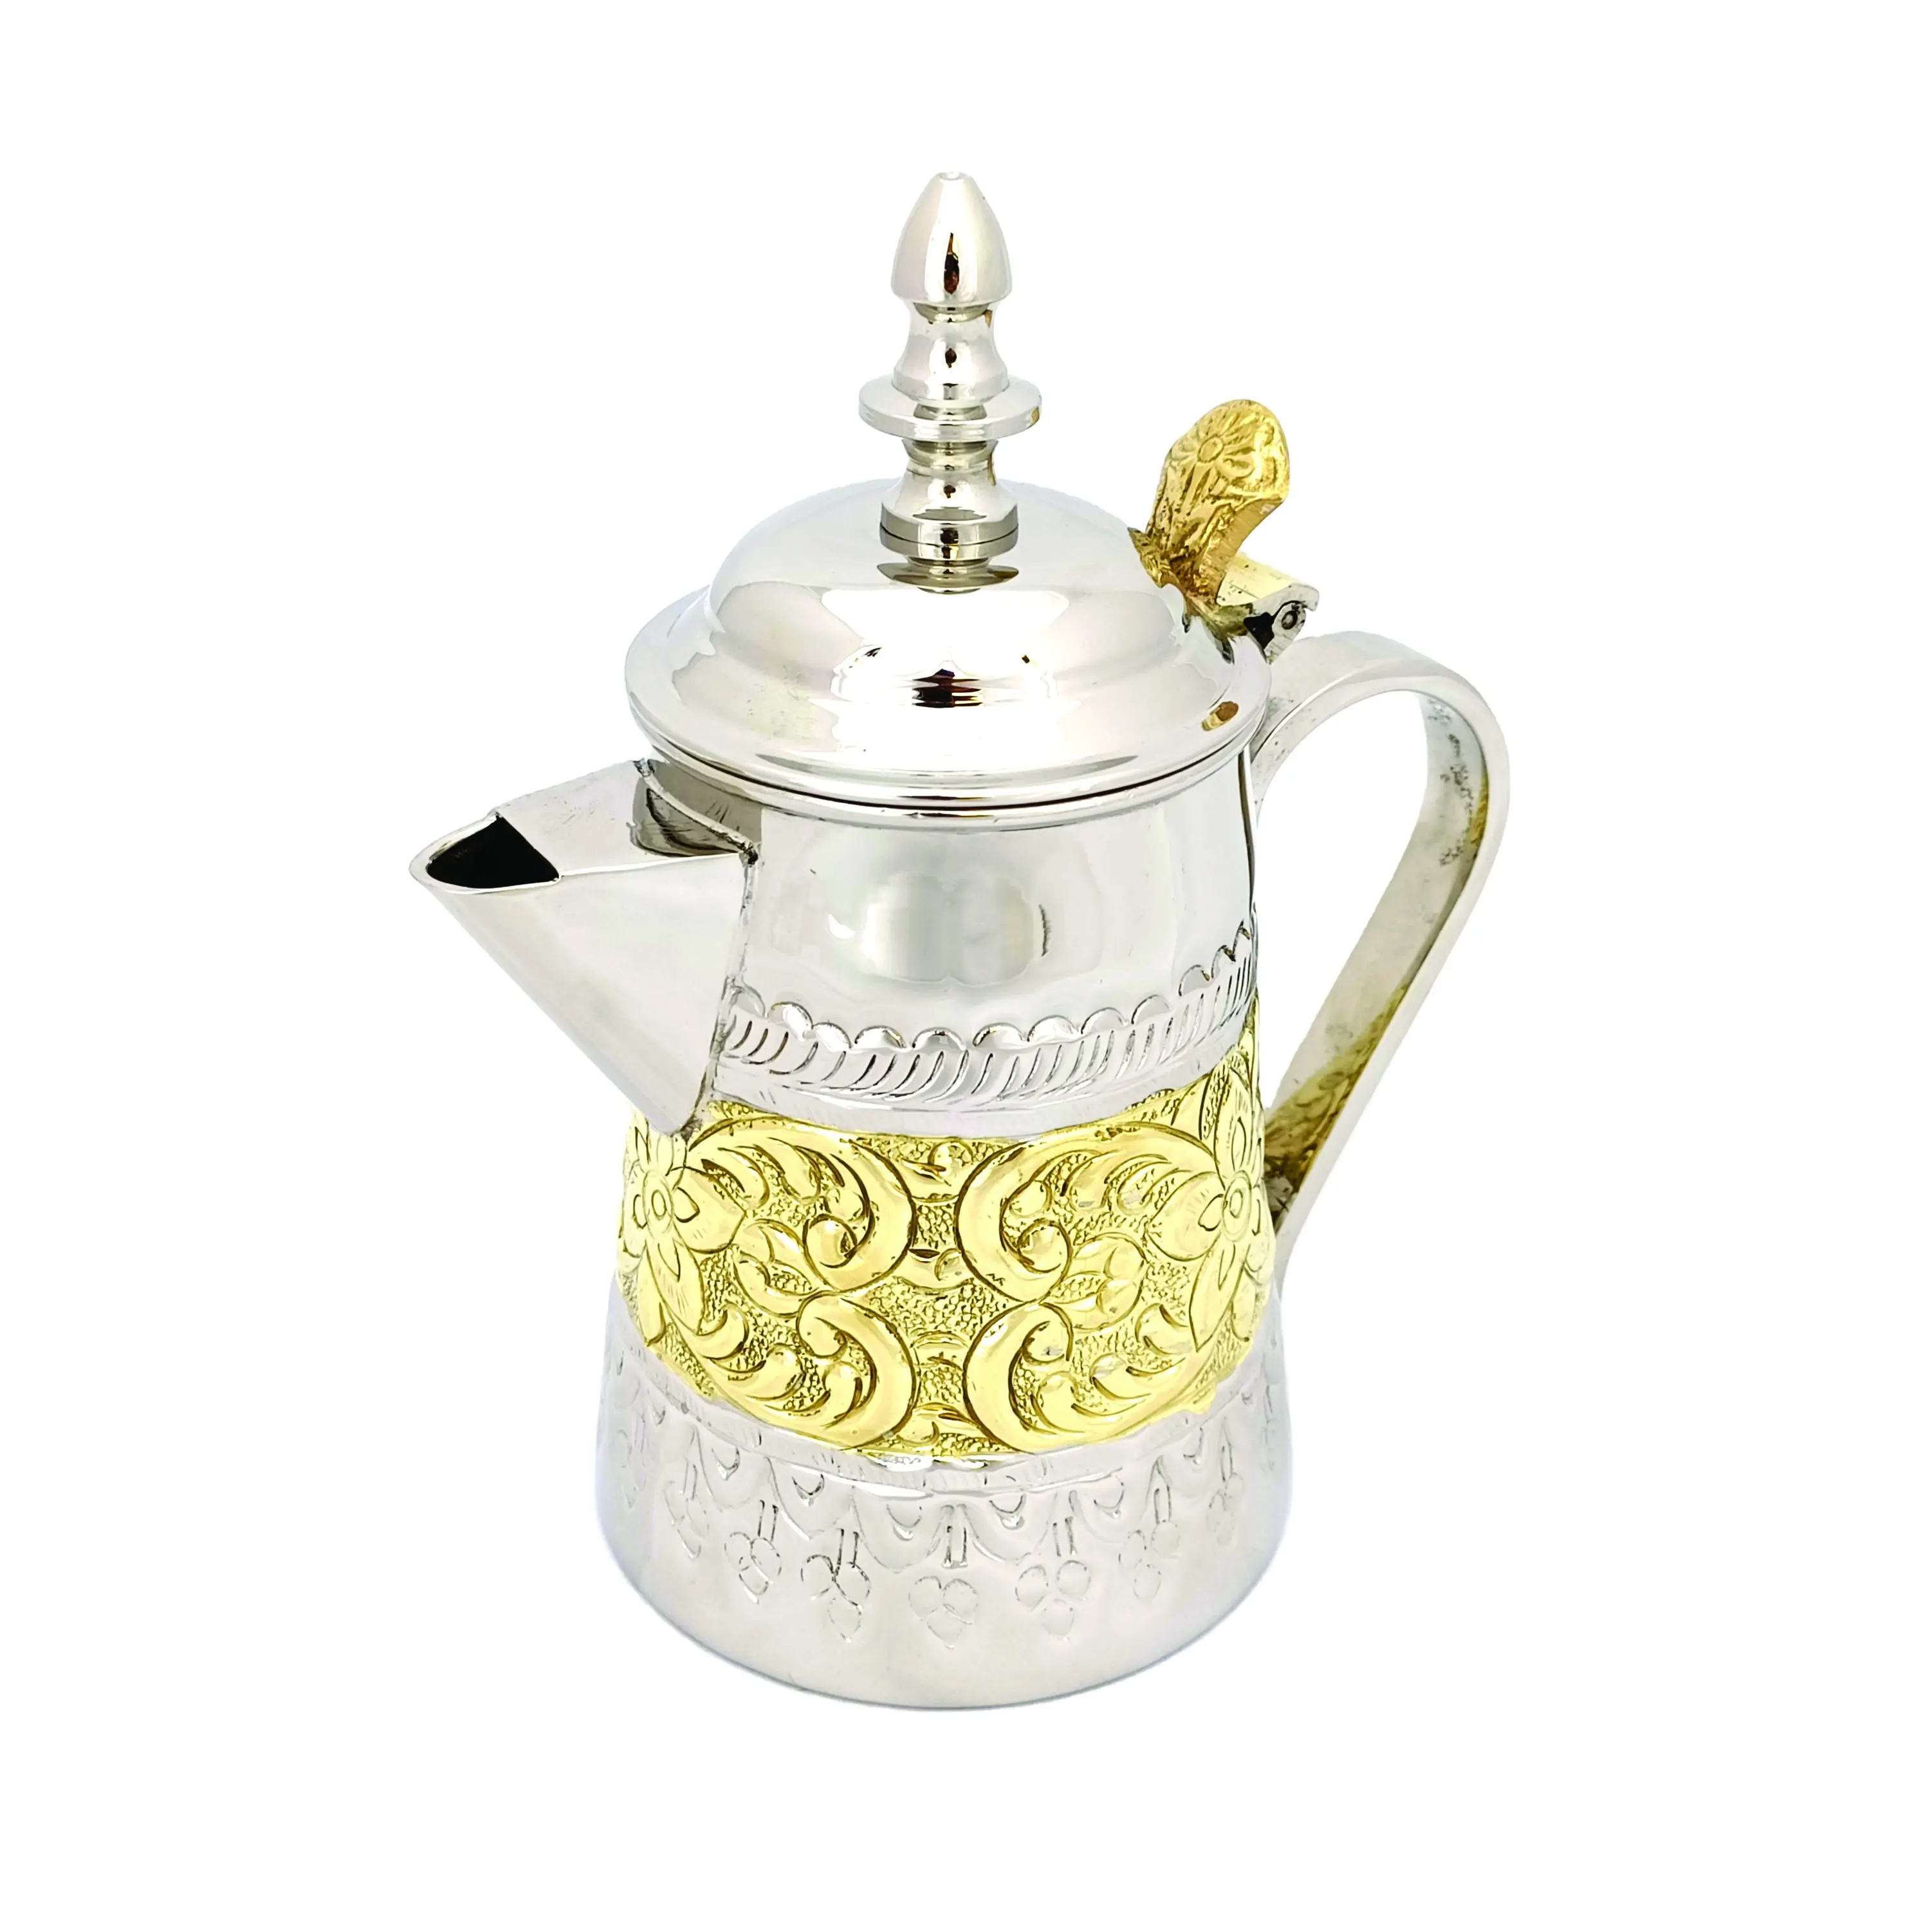 アラビアのティーポット & ケトルコーヒーティーセットアラビアのコーヒーポットダラターキッシュコーヒーセット真鍮のギフトアイテムのアイデア手工芸品インド